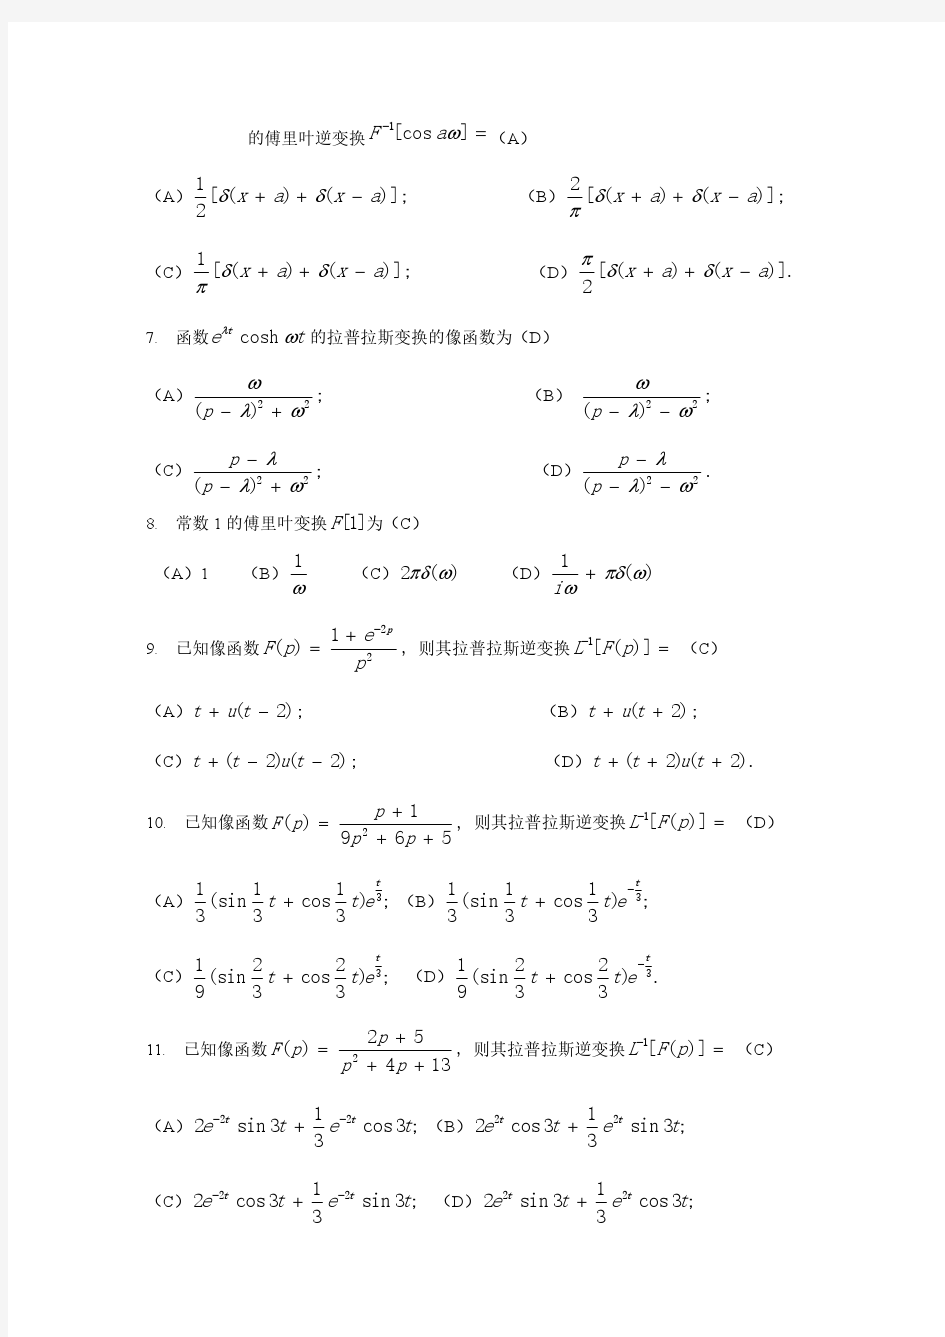 上海交通大学数学物理方法-积分变换试题